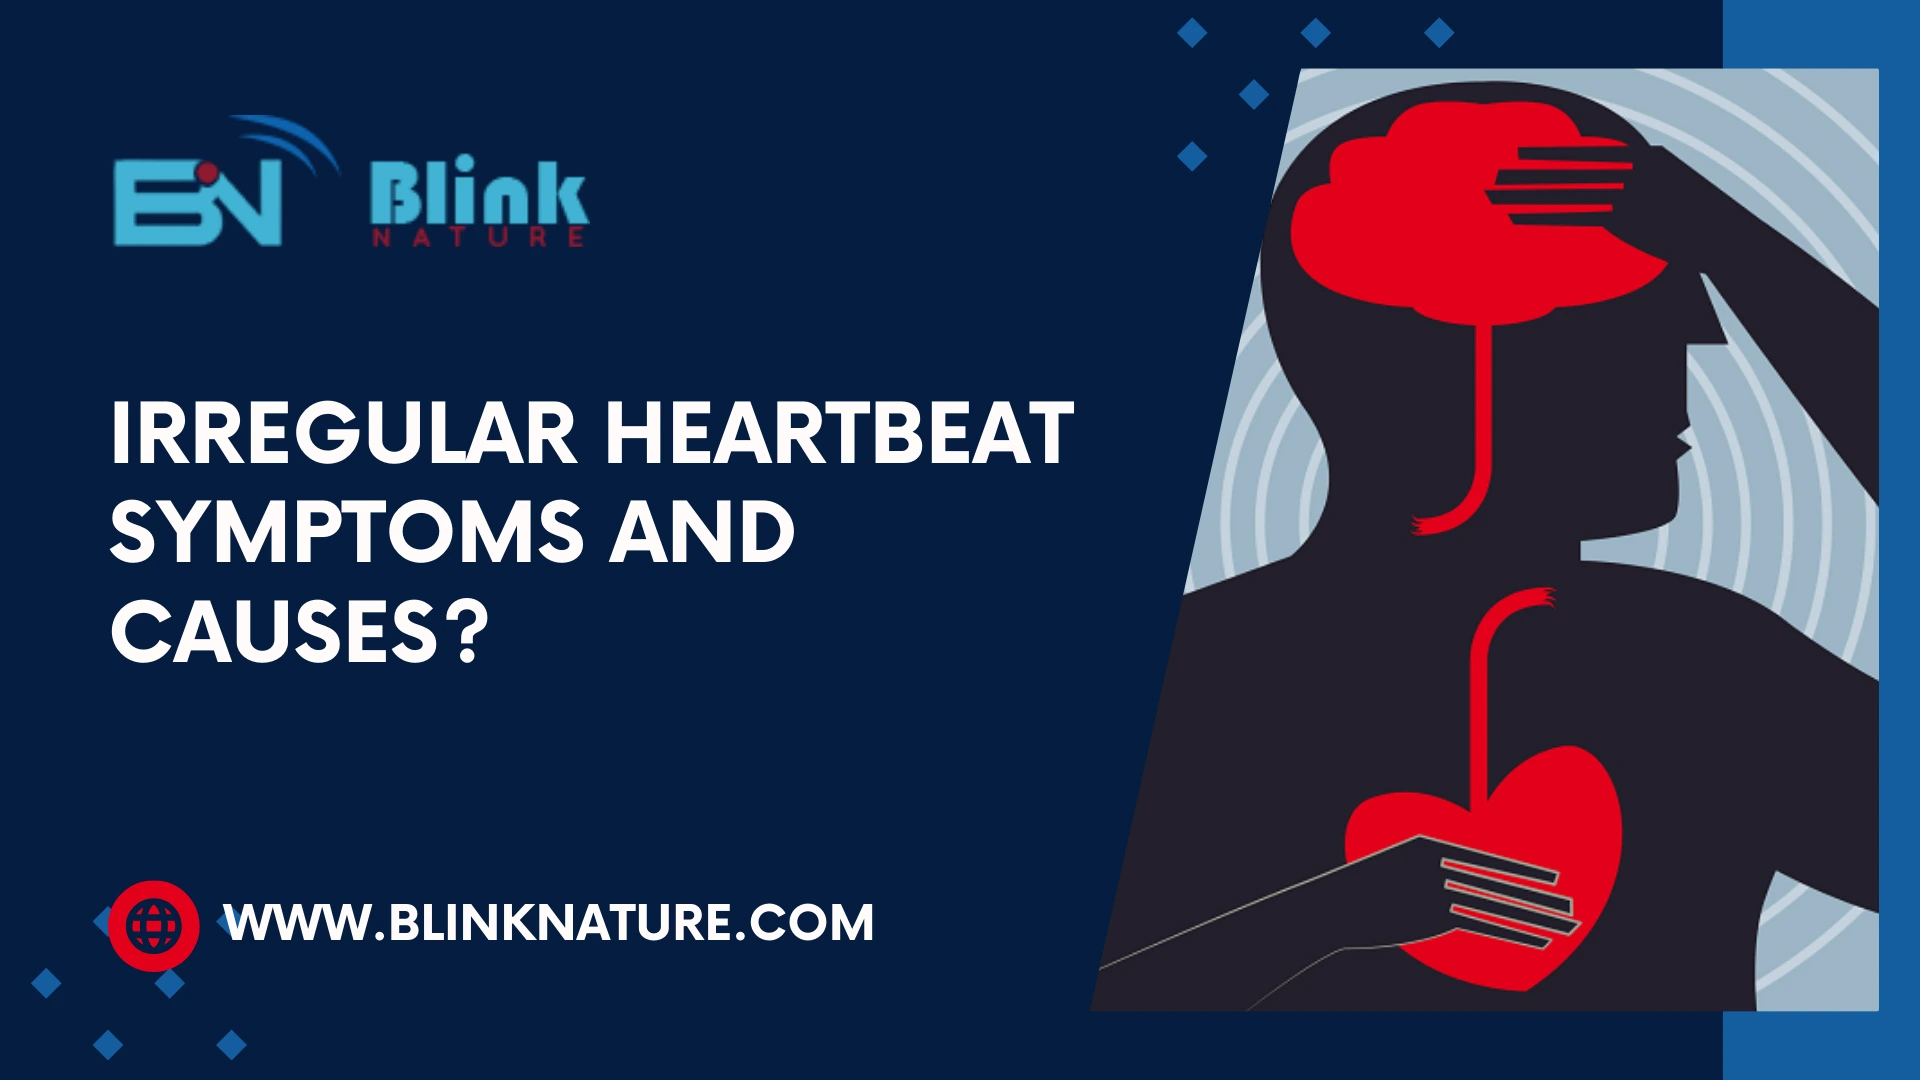 How serious is an Irregular Heartbeat?